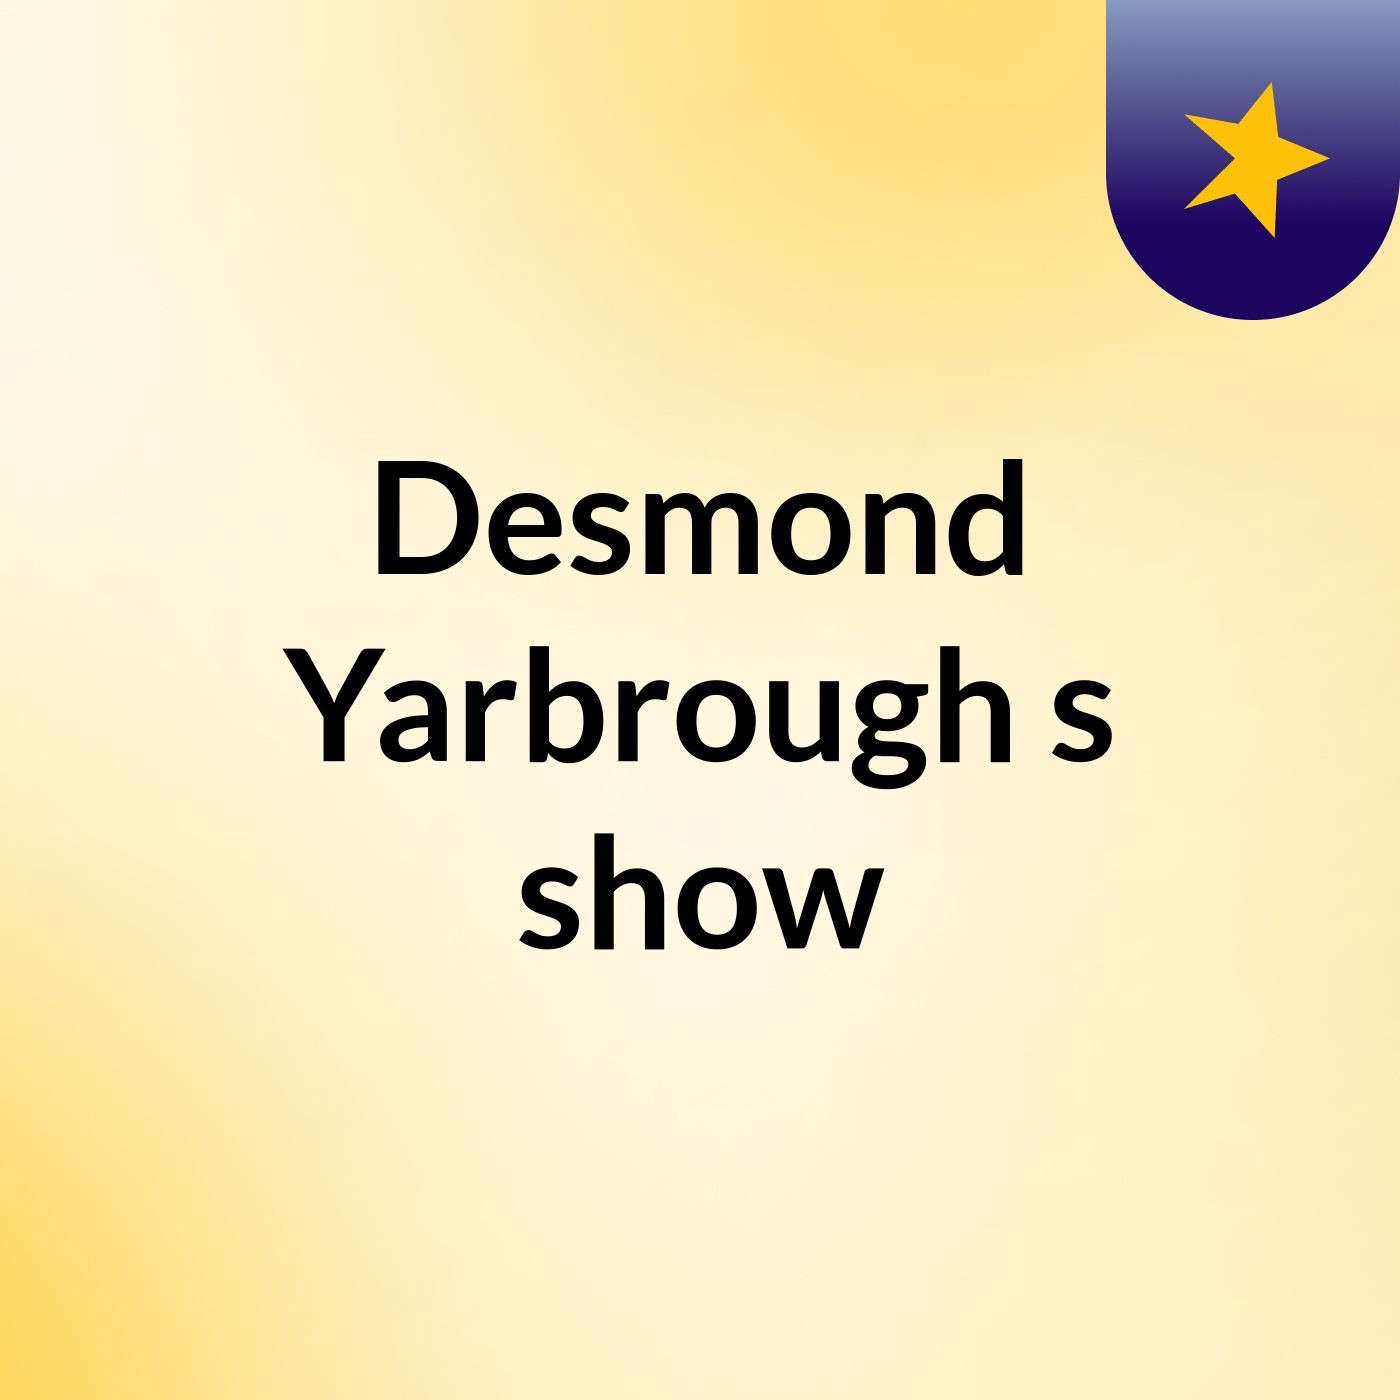 Episode 18 - Desmond Yarbrough's show